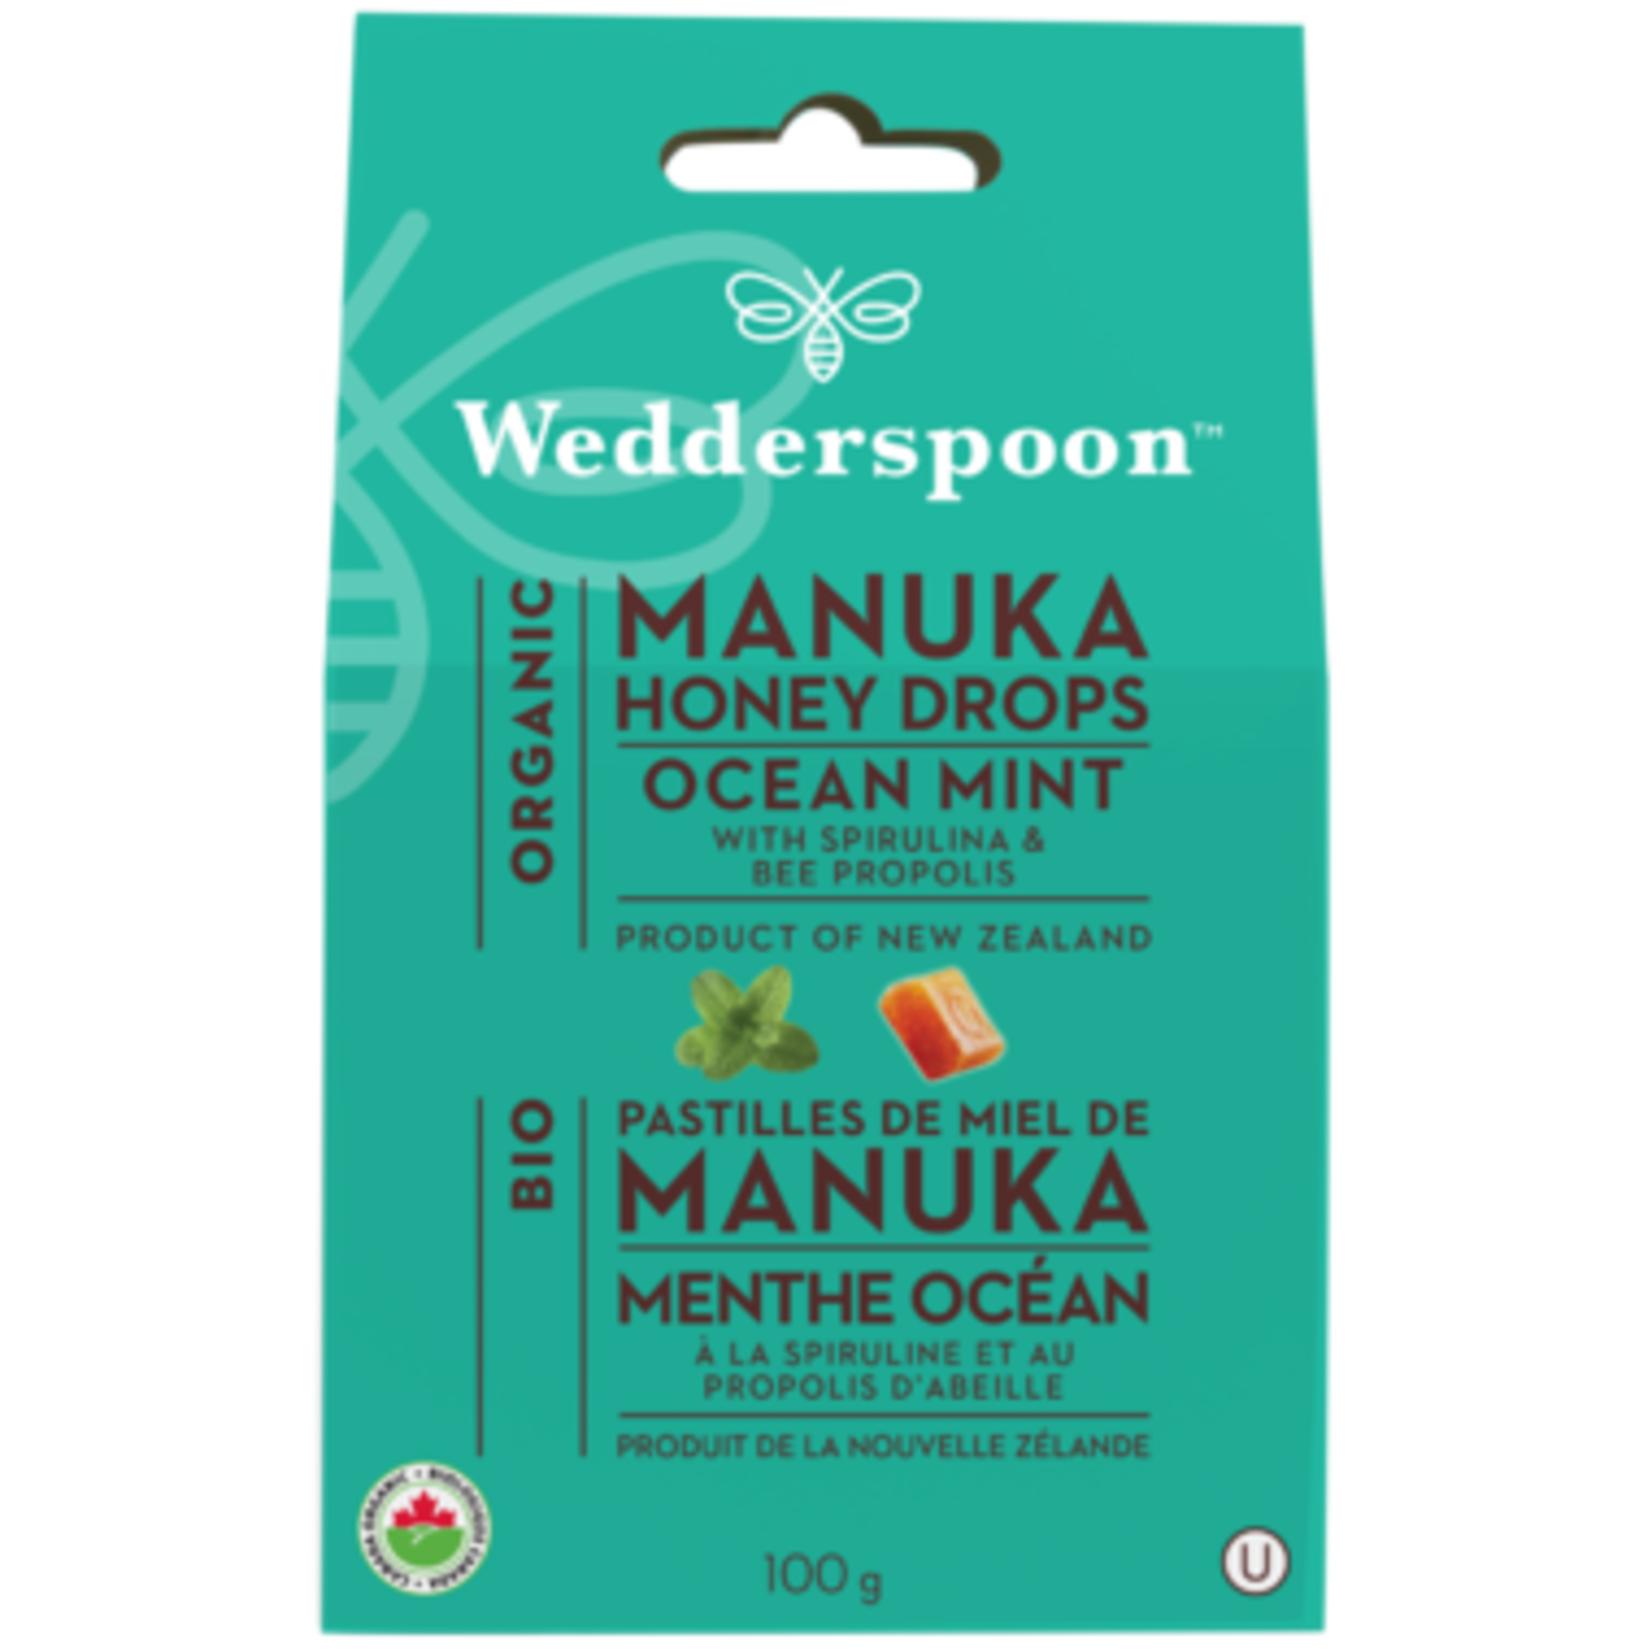 Wedderspoon Wedderspoon Manuka Honey Drops - Ocean Mint